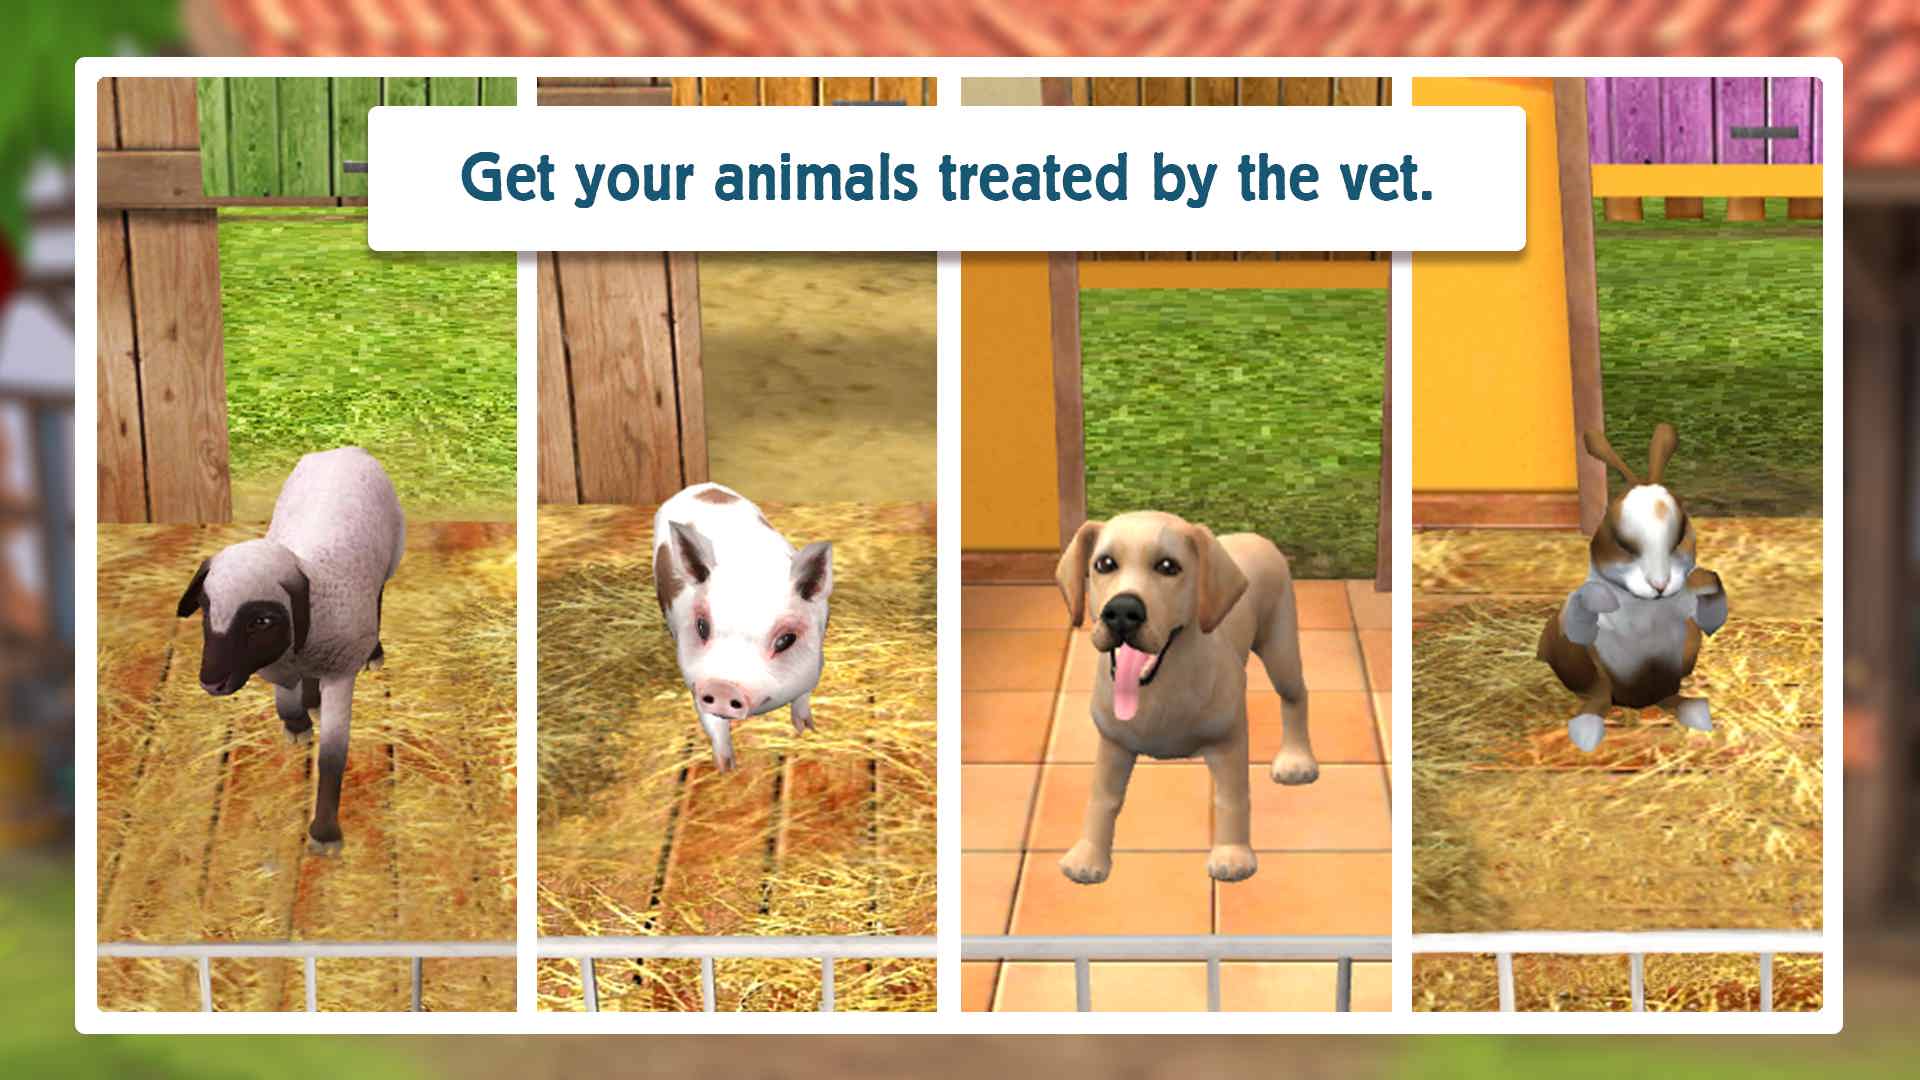 دانلود Pet World – My animal shelter 5.5 – بازی پناهگاه حیوانات اندروید